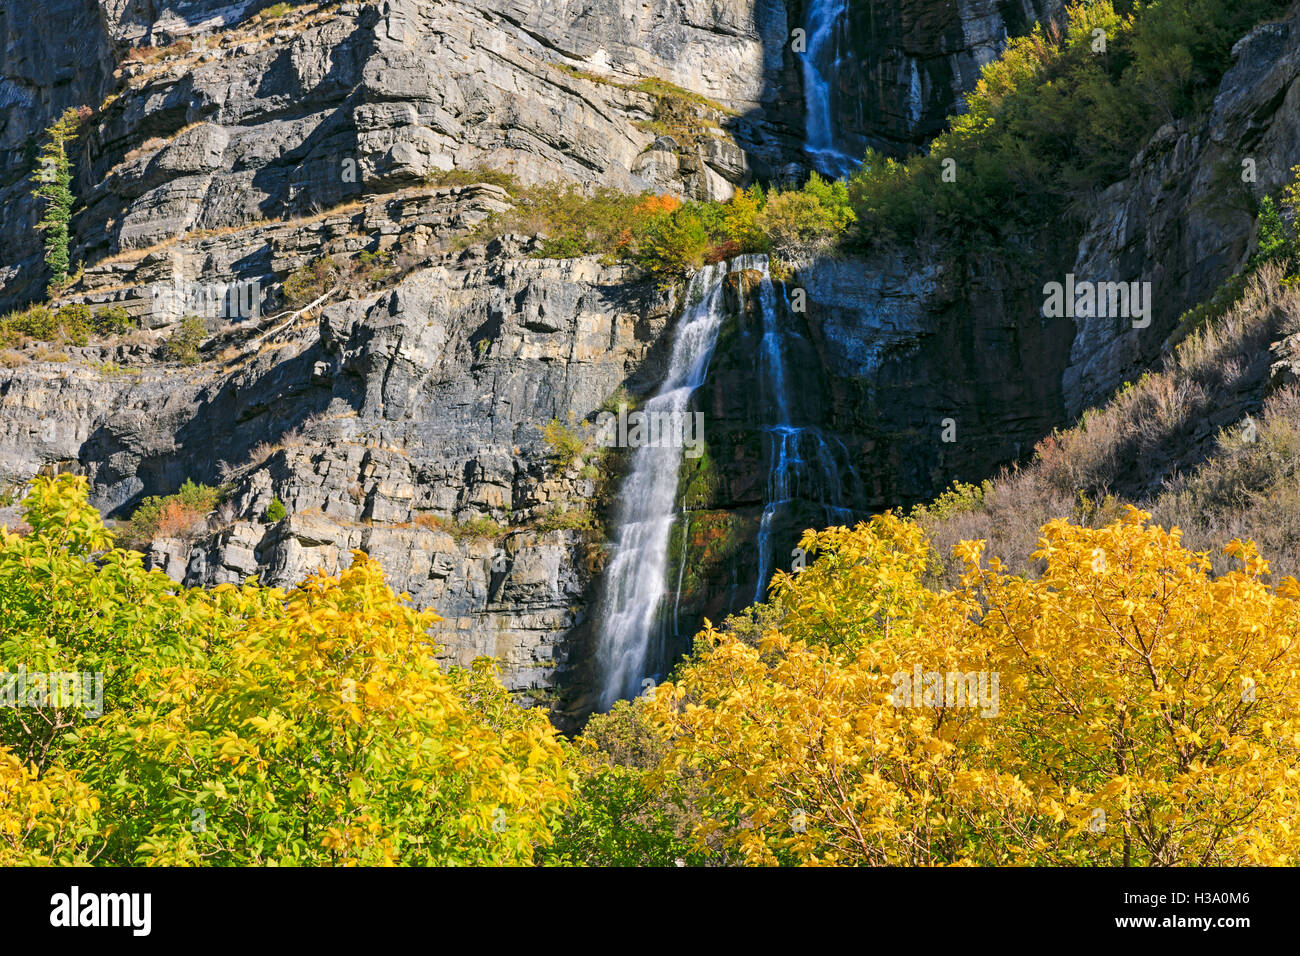 Esta es una vista de los colores del otoño en Bridal Veil Falls cañón en Provo, Utah, EE.UU. Foto de stock